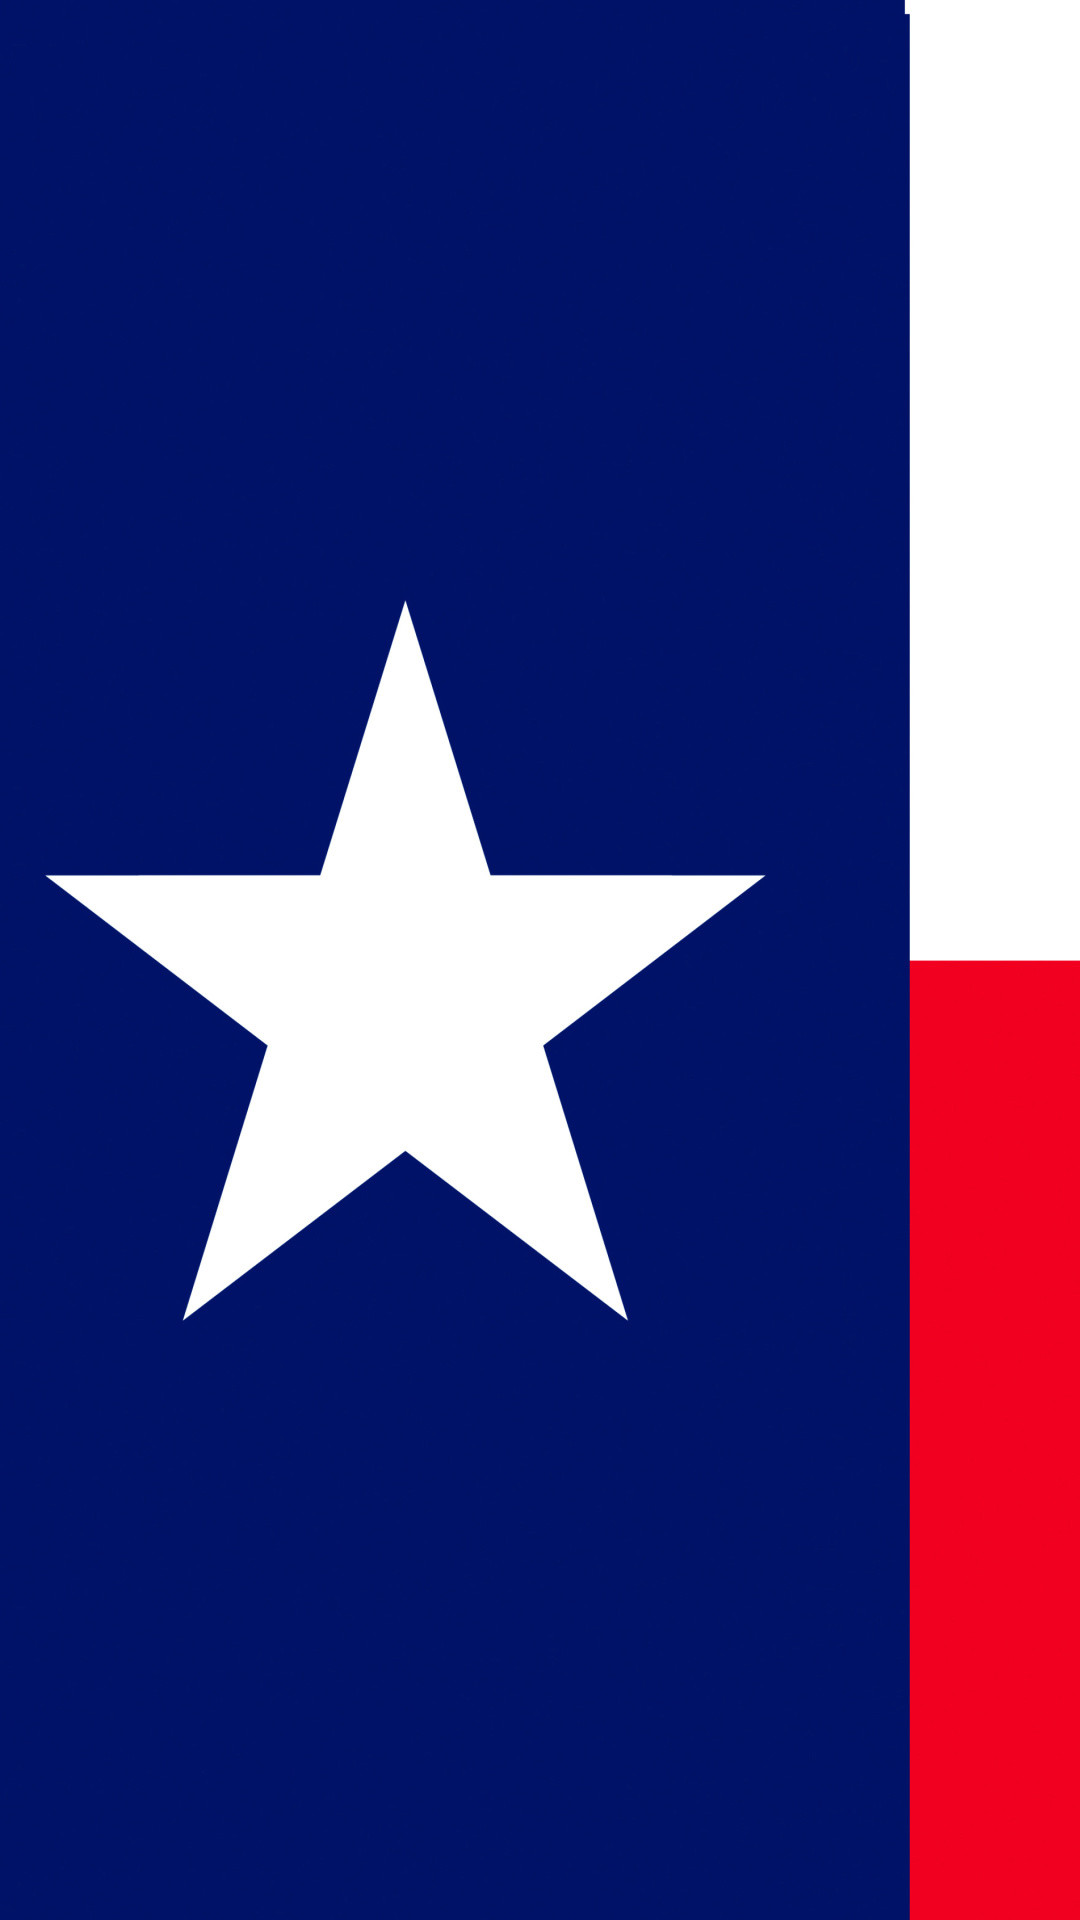 1080x1920 Usa texas flag iphone 6 hd photos